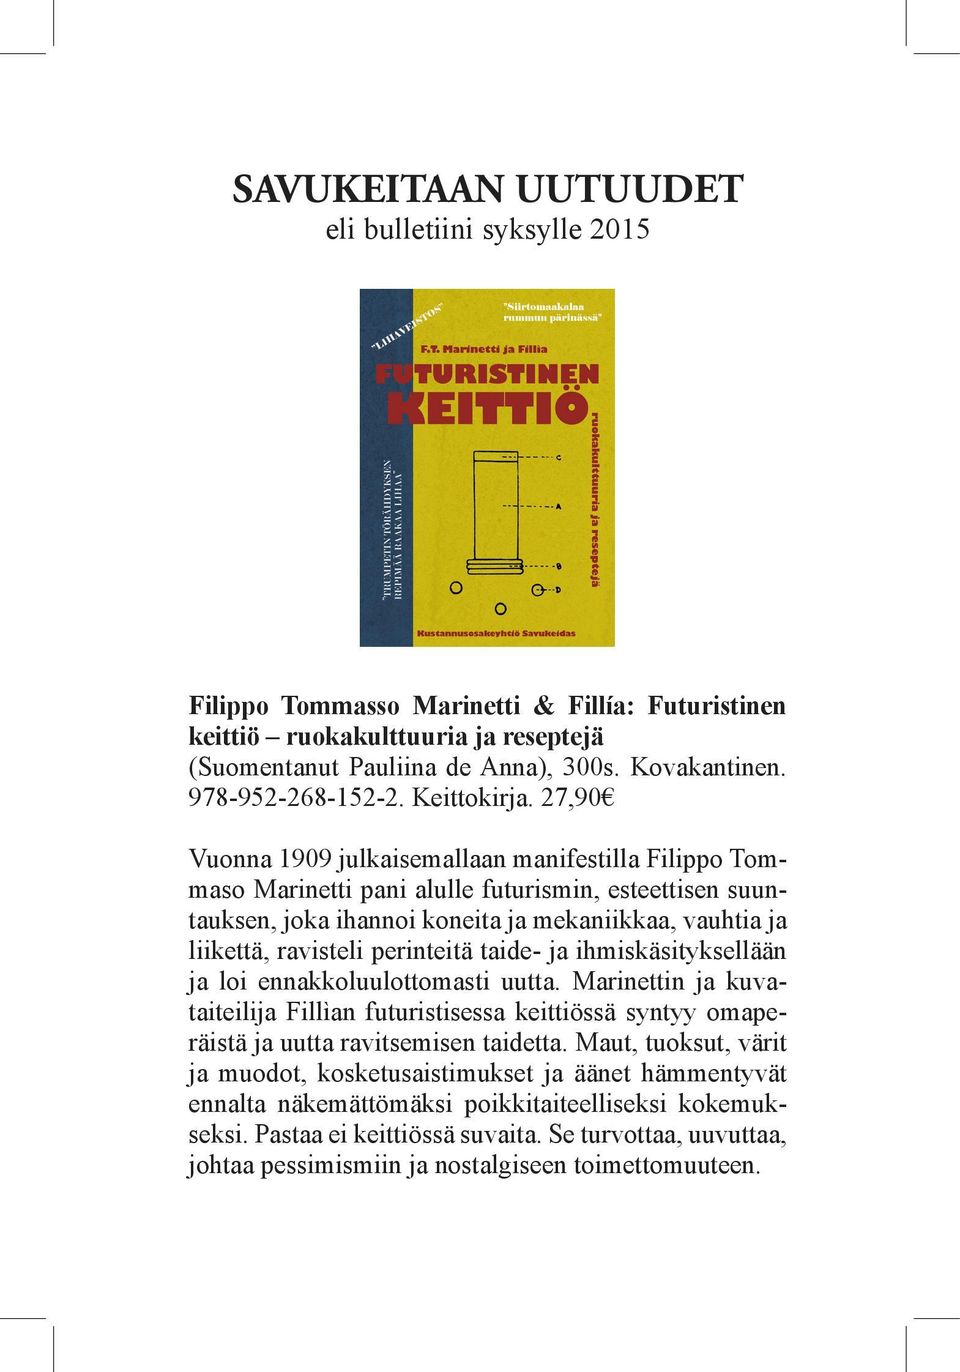 27,90 Vuonna 1909 julkaisemallaan manifestilla Filippo Tommaso Marinetti pani alulle futurismin, esteettisen suuntauksen, joka ihannoi koneita ja mekaniikkaa, vauhtia ja liikettä, ravisteli